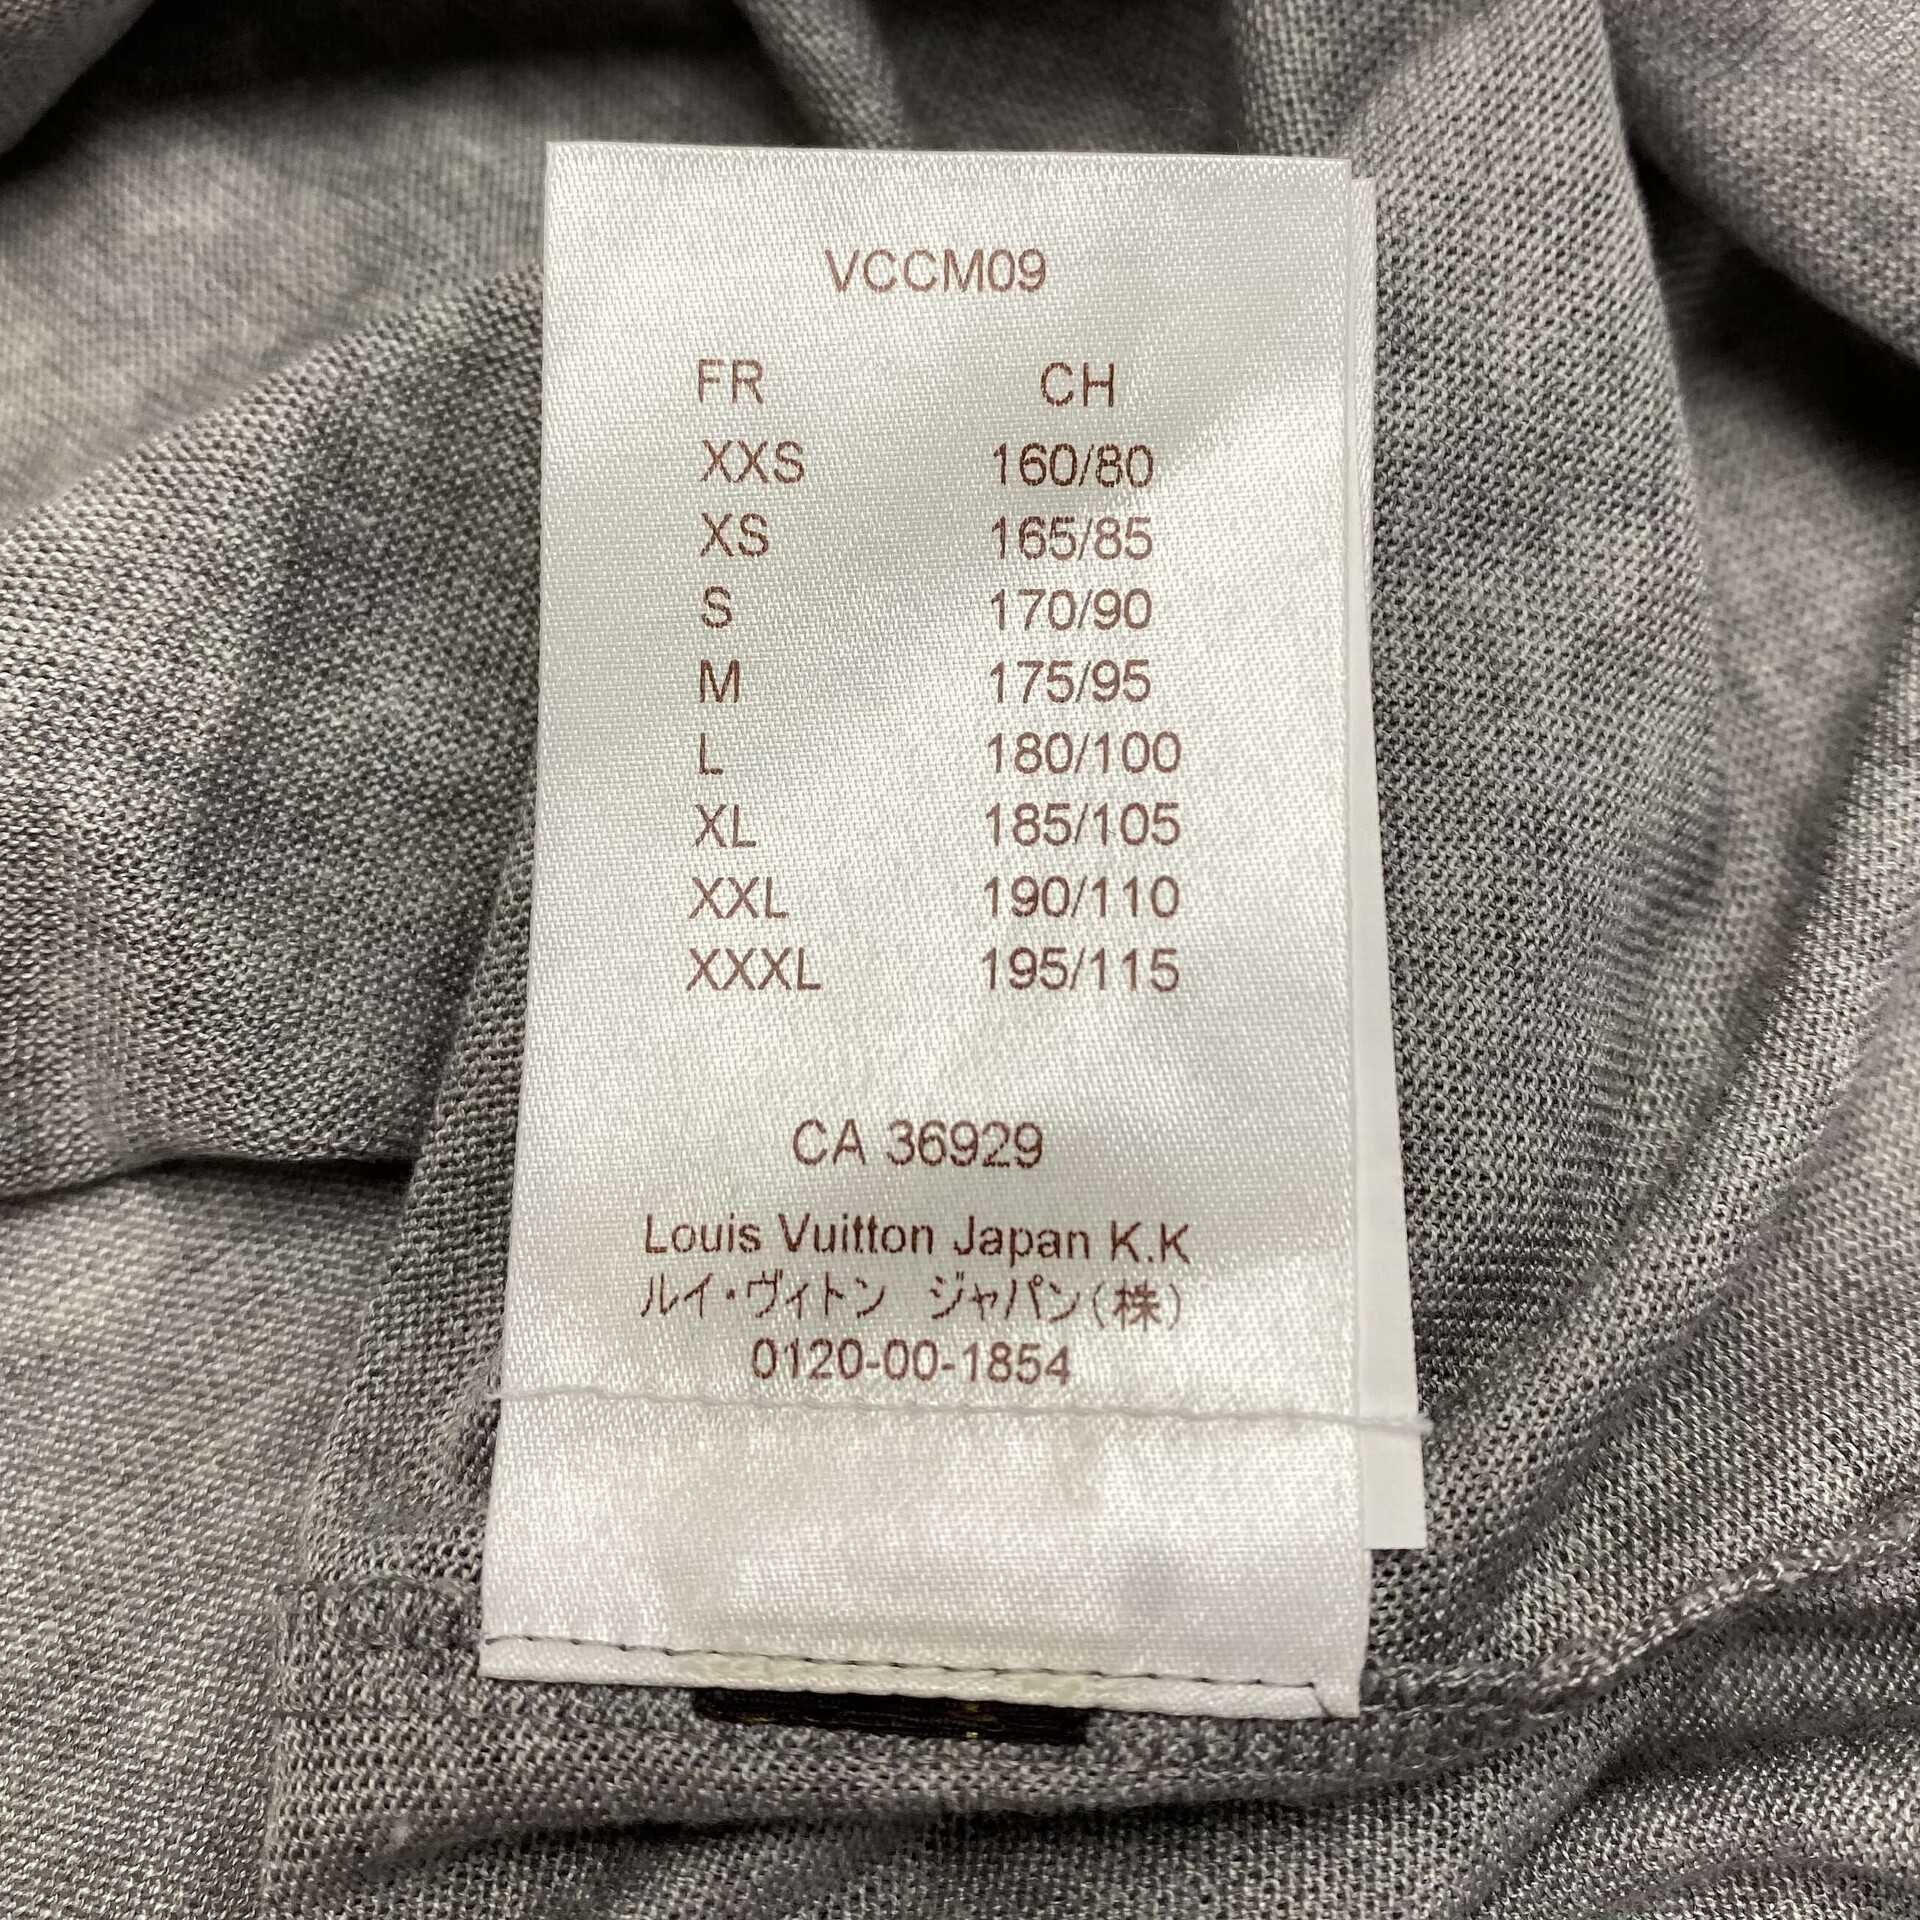 Camiseta Polo Louis Vuitton